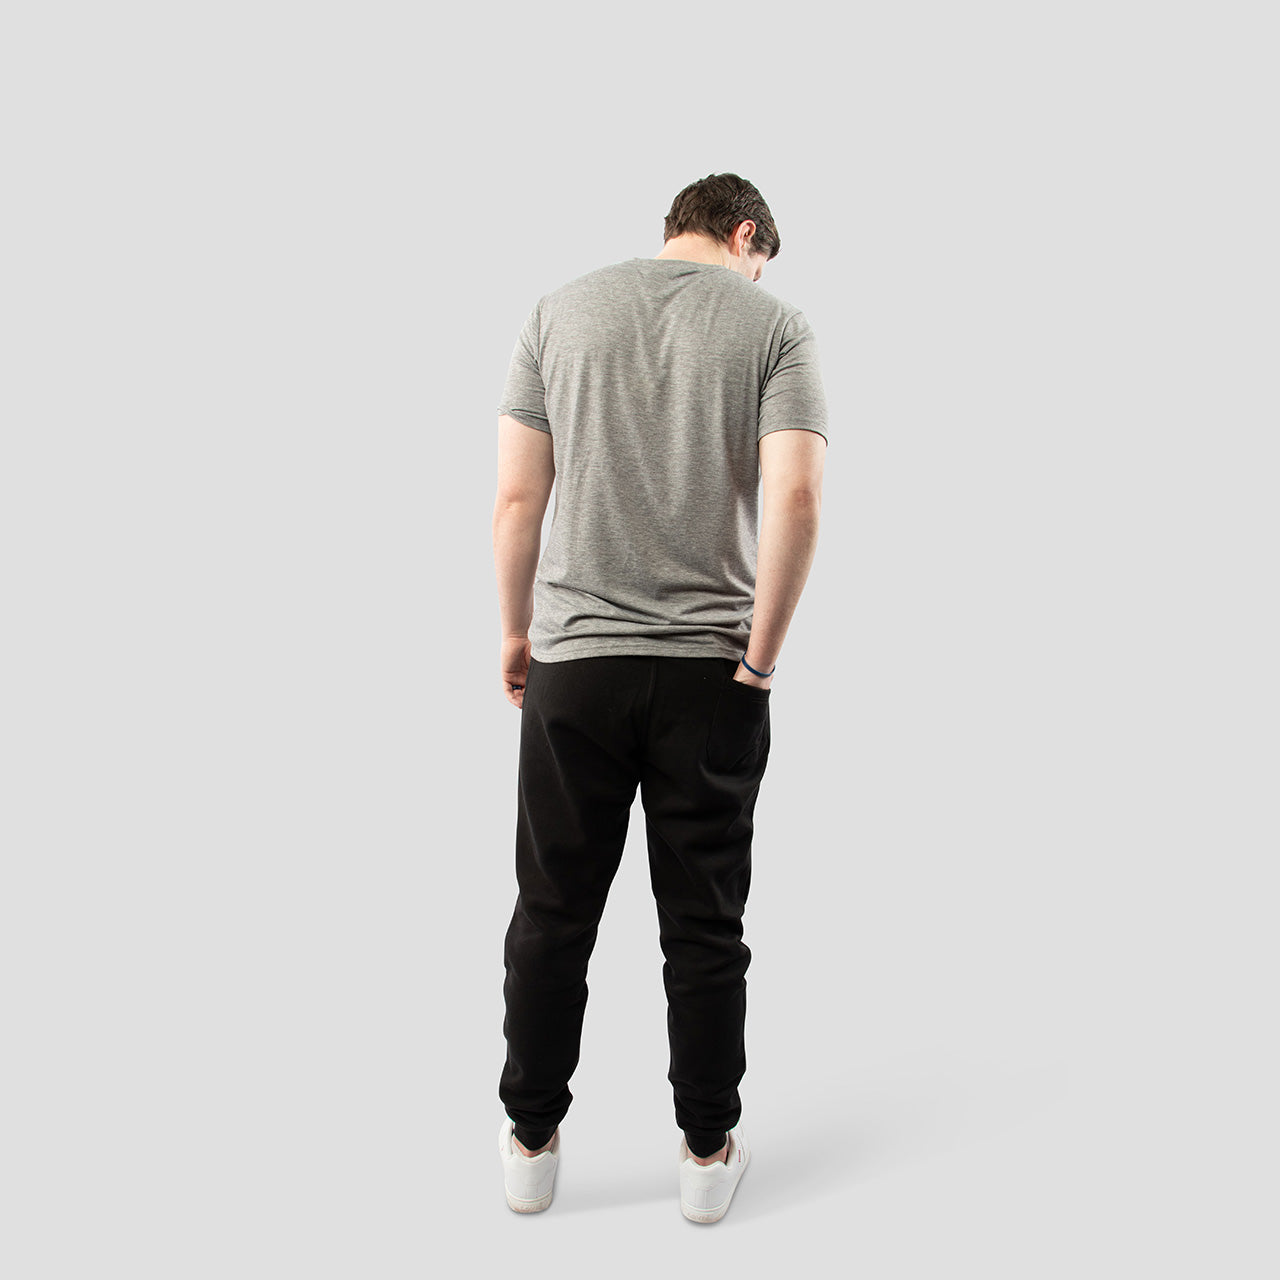 Light Gray V-Neck Shirt for Tall Slim Men